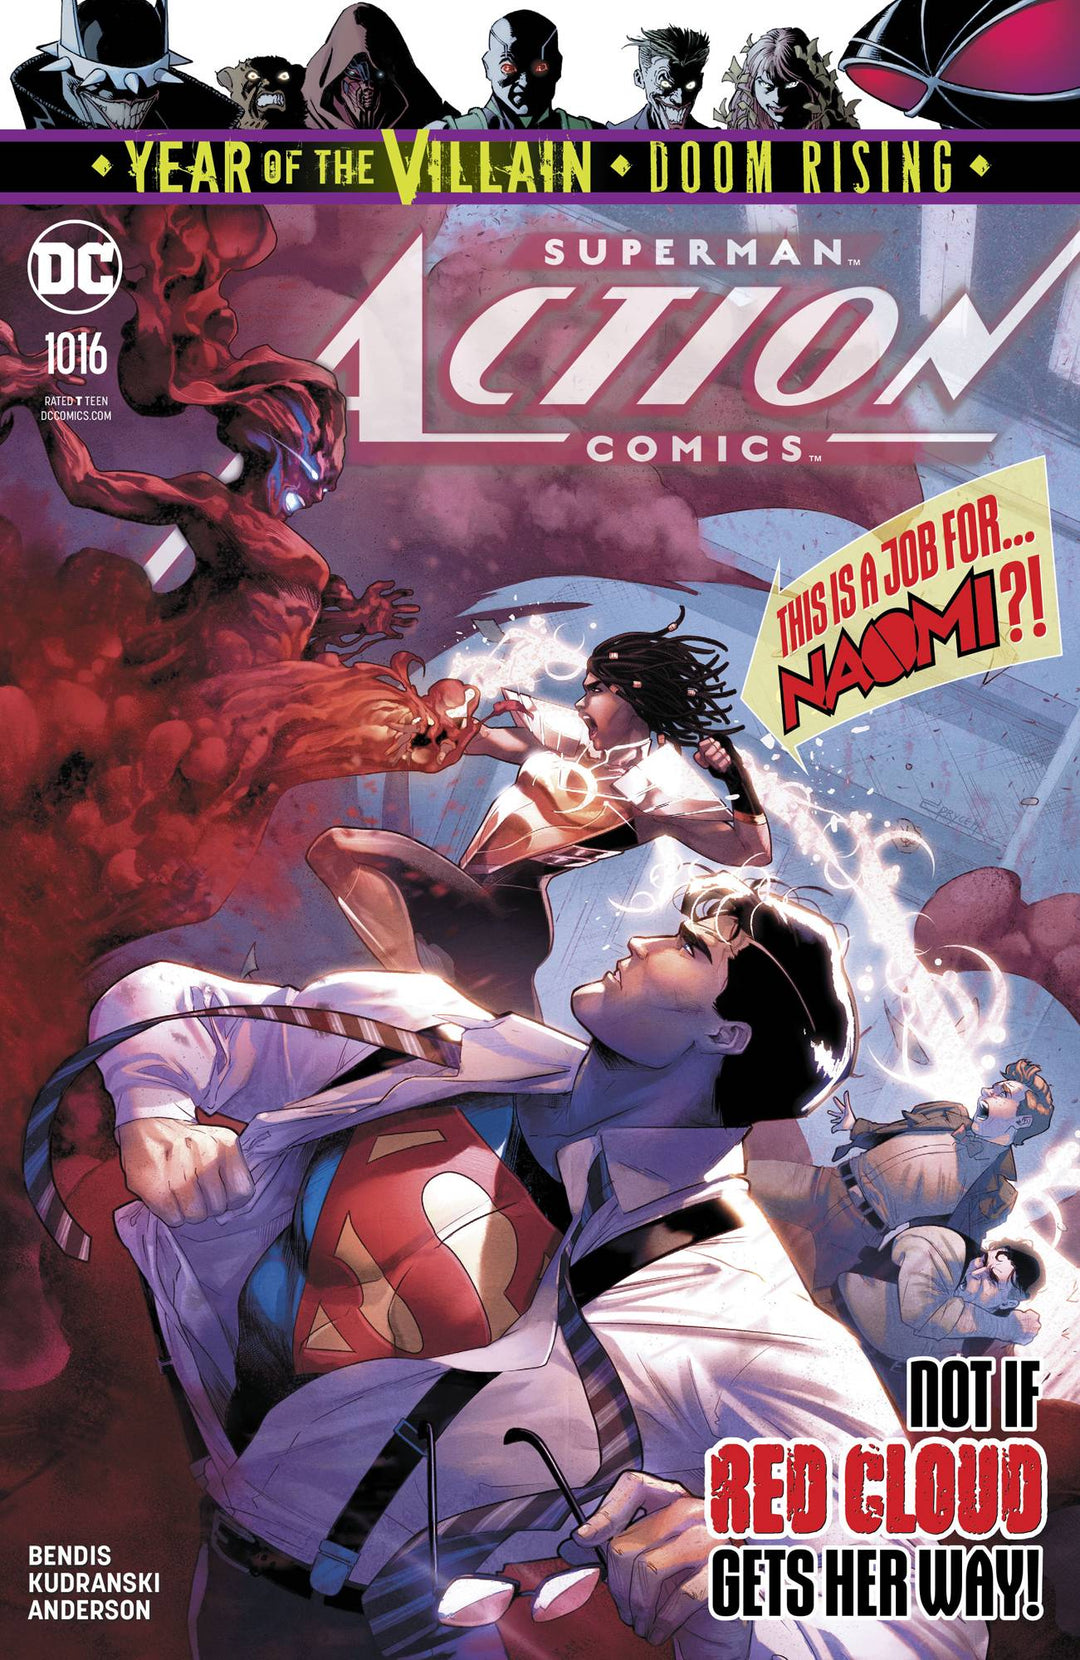 Action Comics #1016 Cover A <BINS>